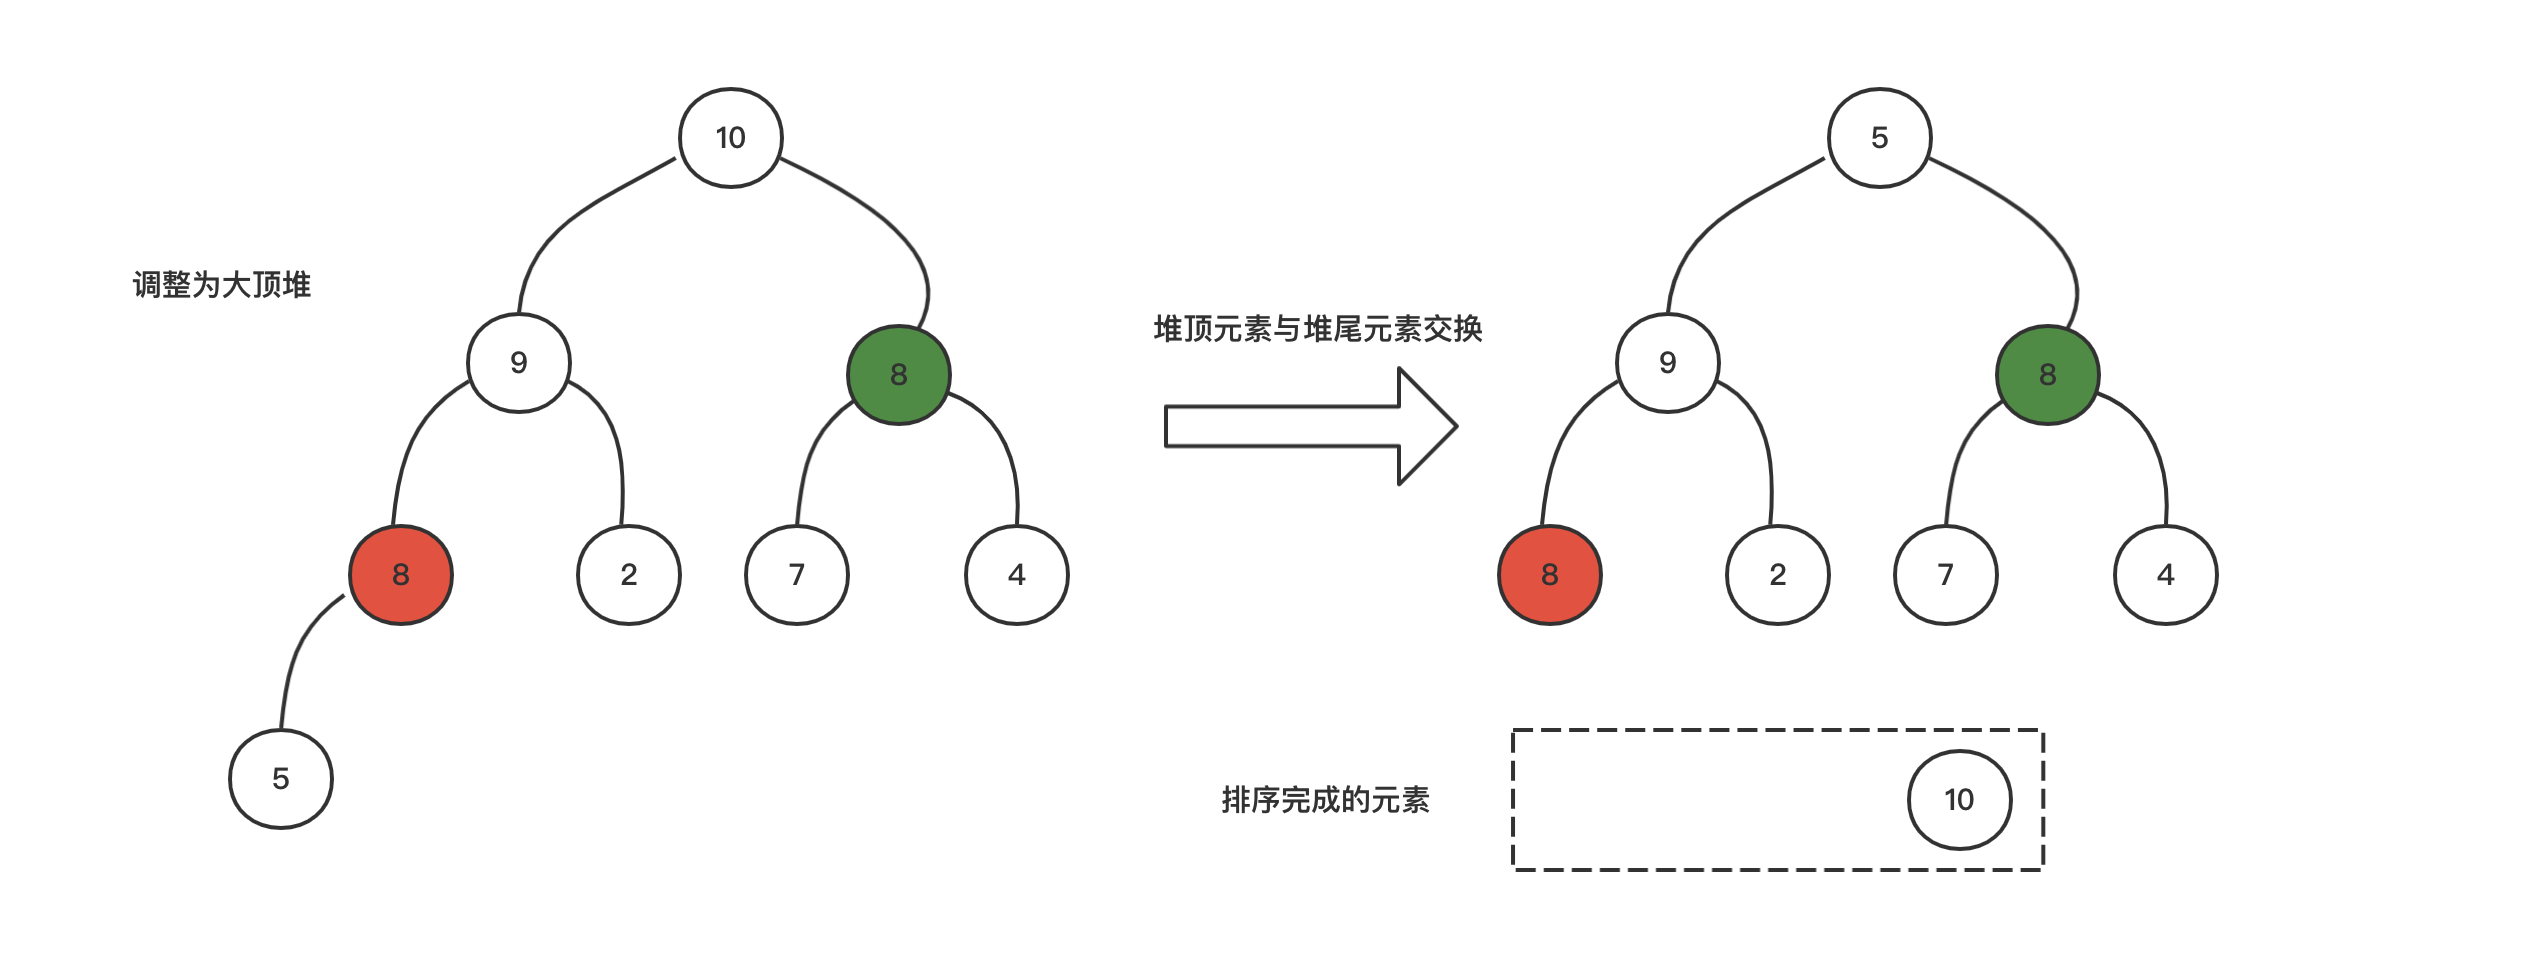 堆的数据结构本质是一棵完全二叉树,底层可通过数组实现,根据父节点与